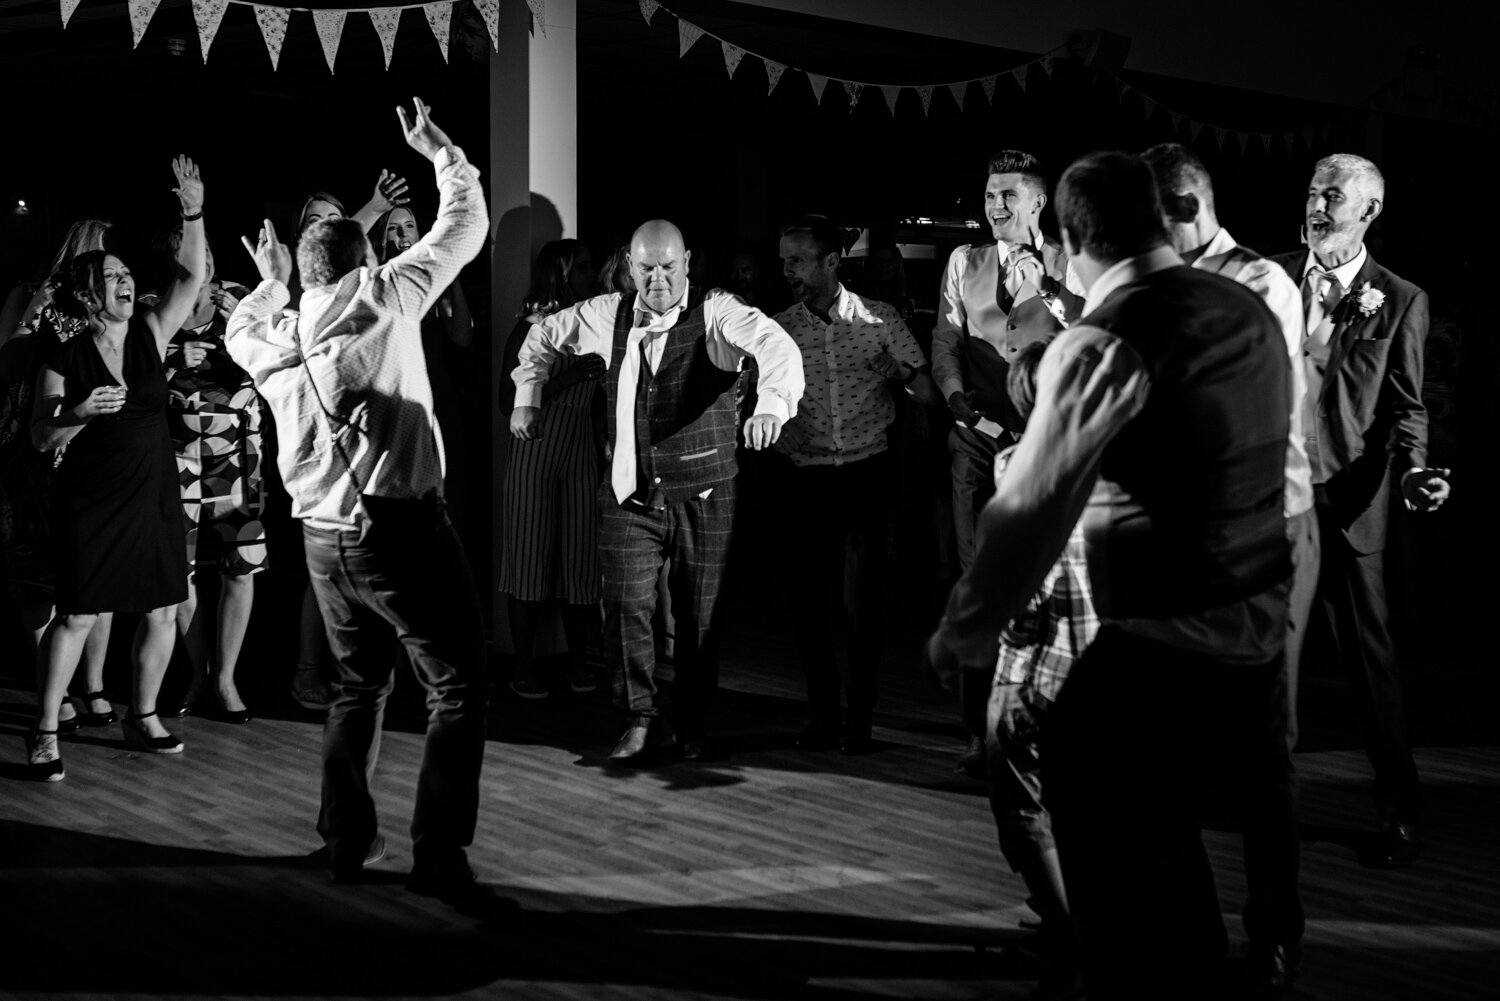 Dancing at wedding at Royal Welsh Showground